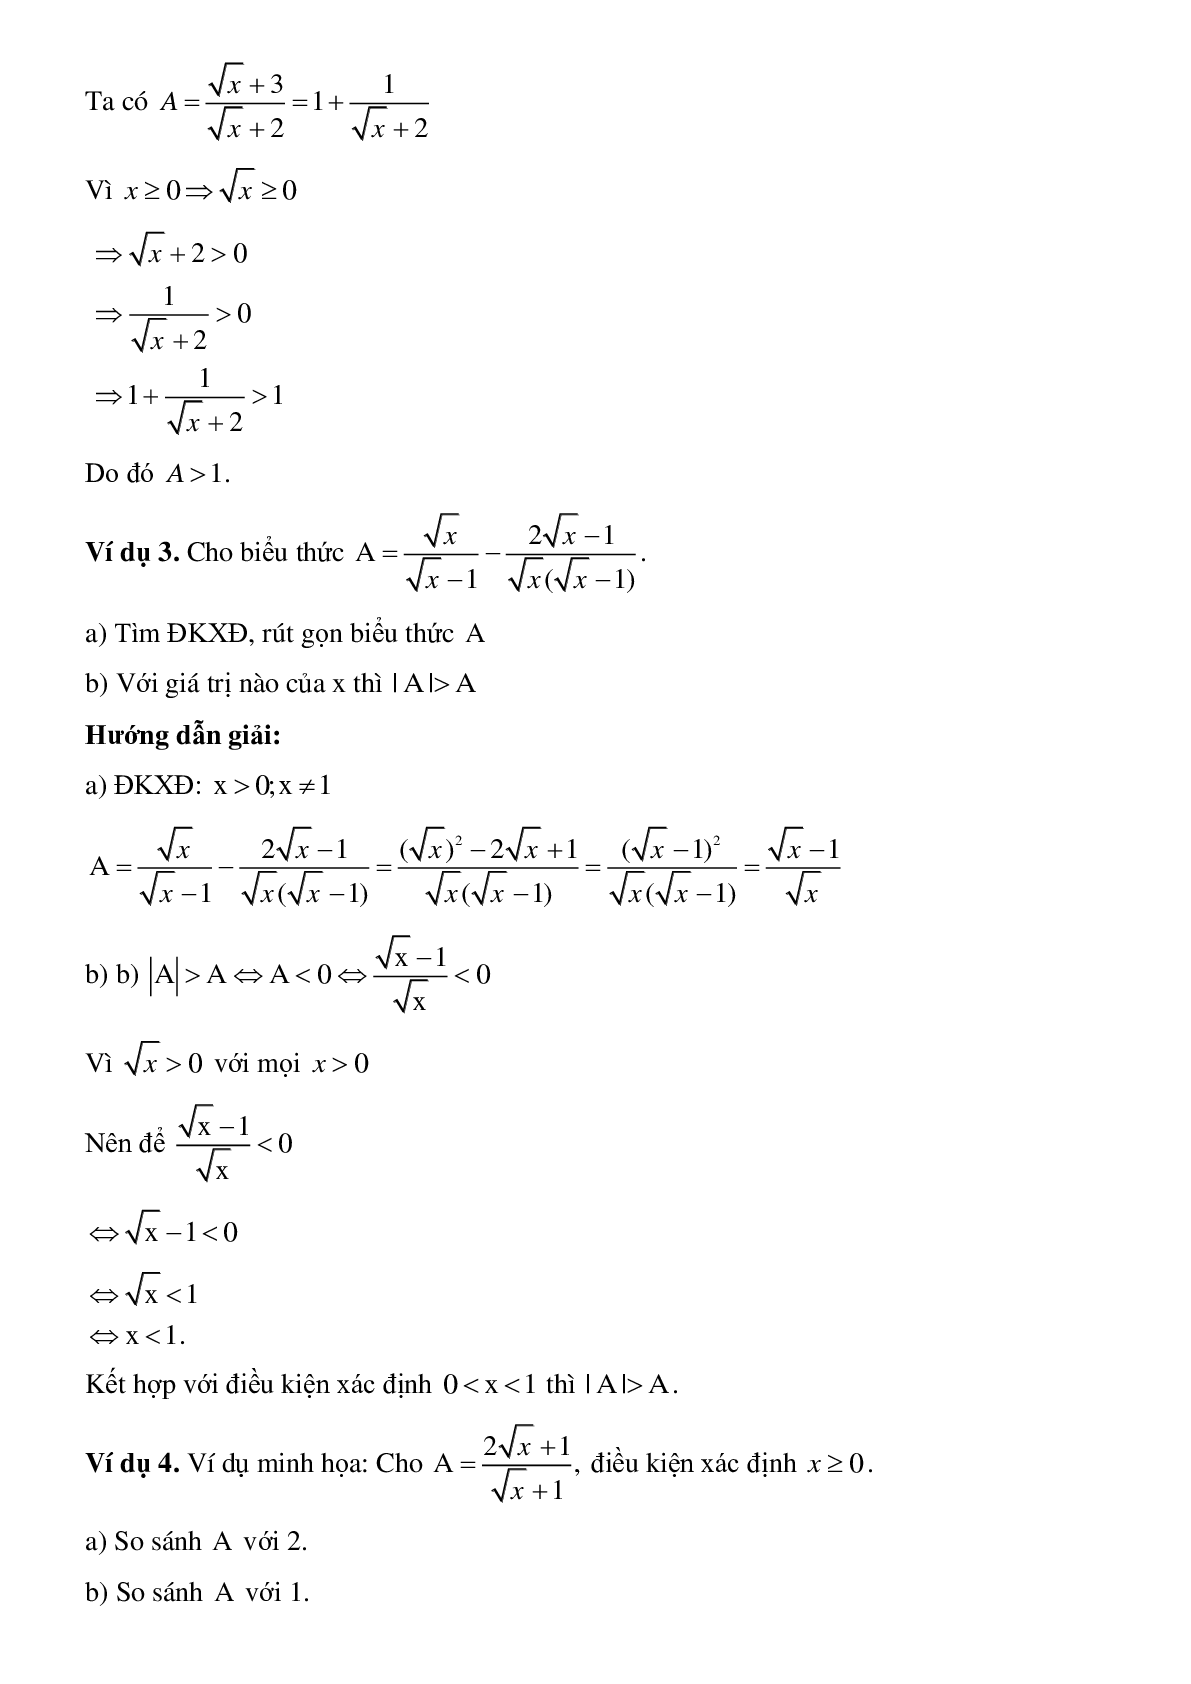 Phương pháp giải So sánh biểu thức chứa căn với một số hoặc với một biểu thức khác (trang 3)